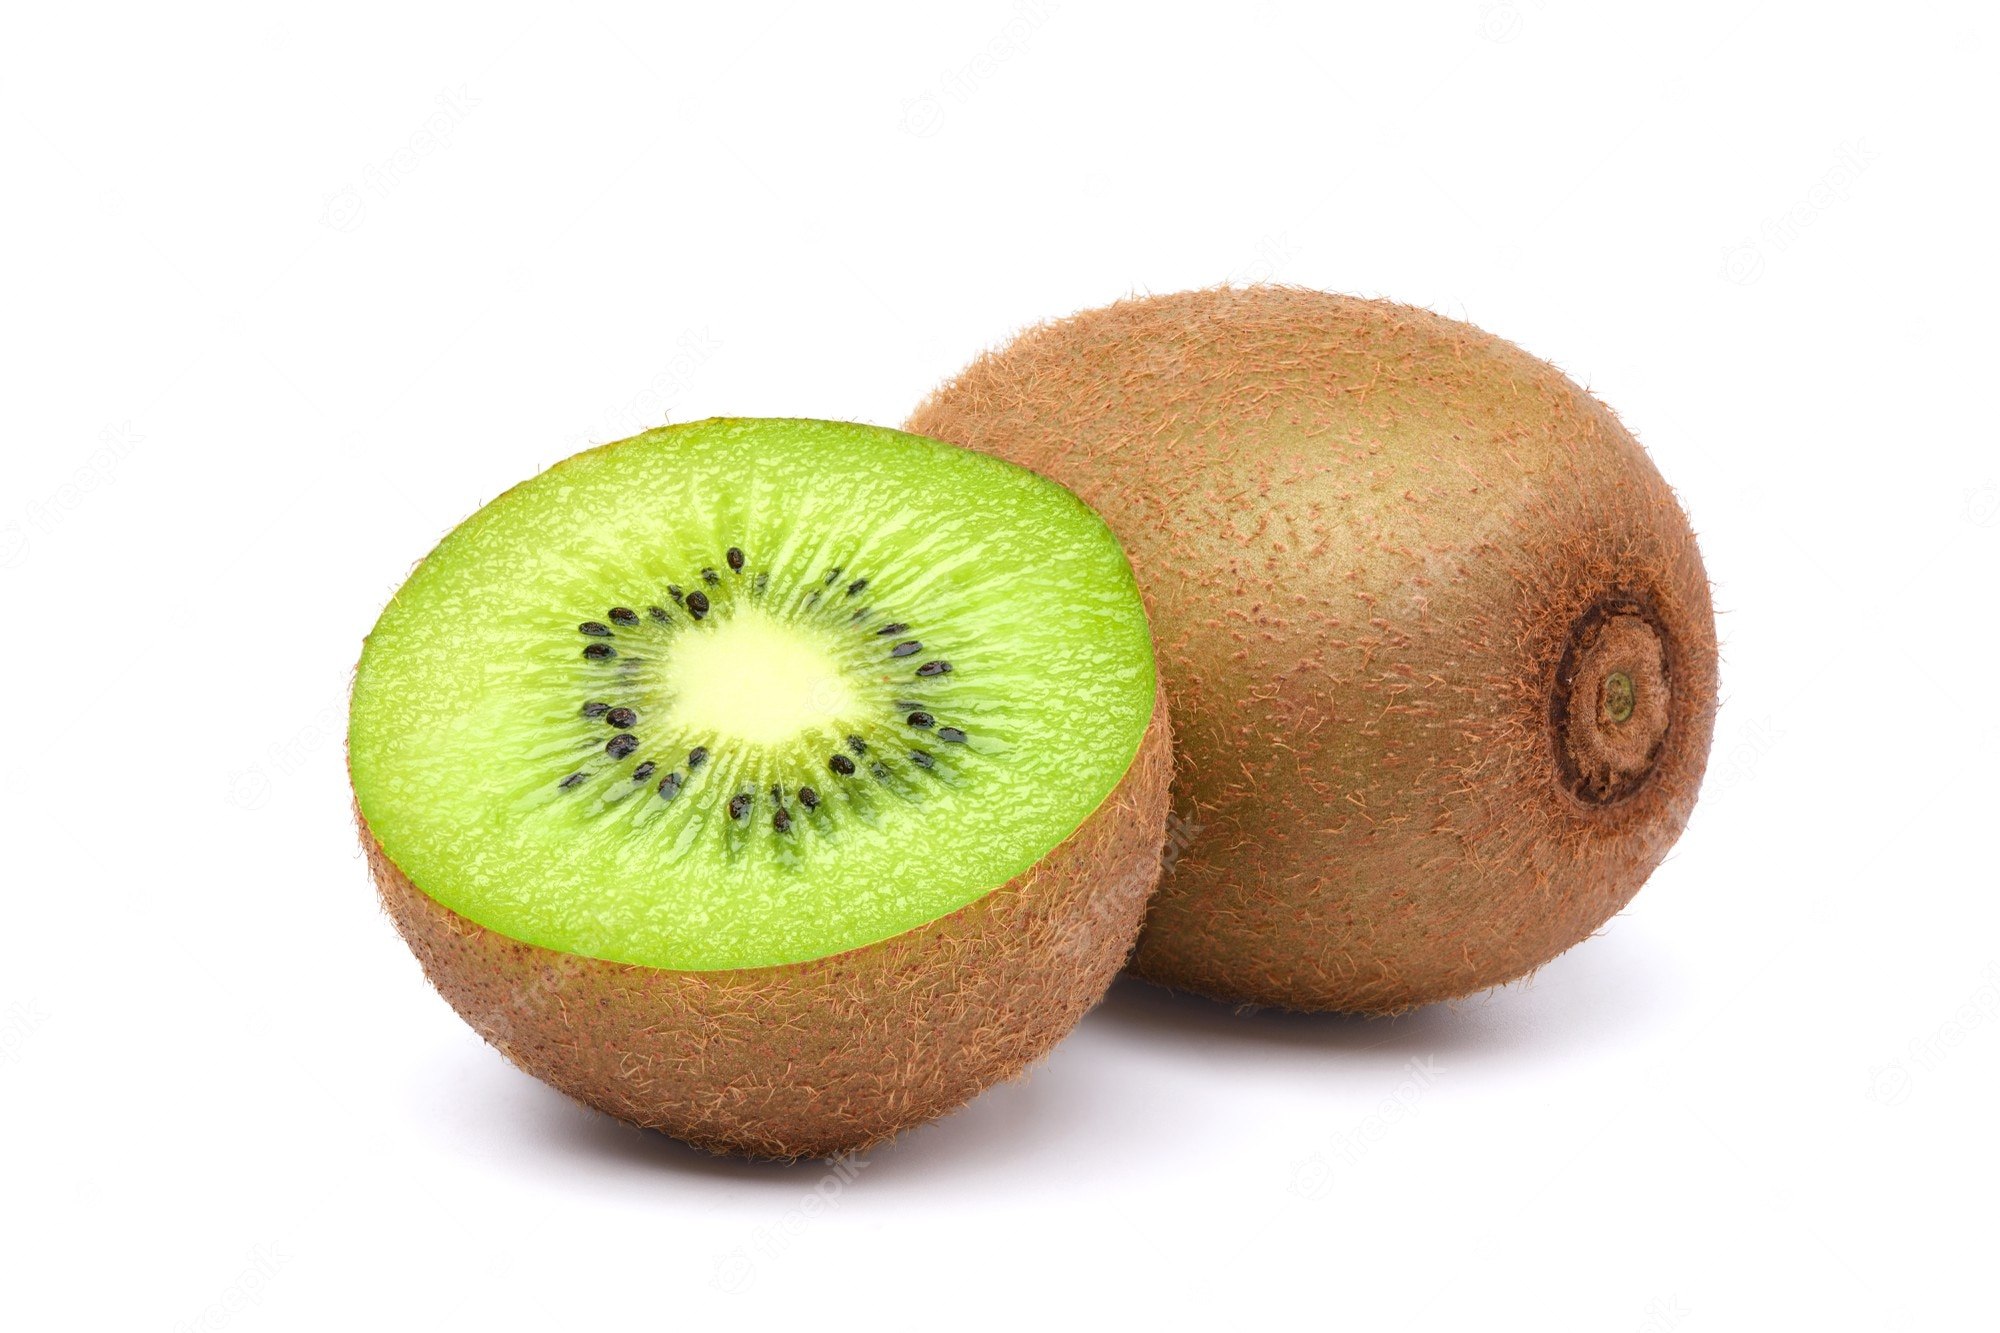 Owoc Kiwi Z Przeciętą Na Pół Na Białym Tle. | Zdjęcie Premium